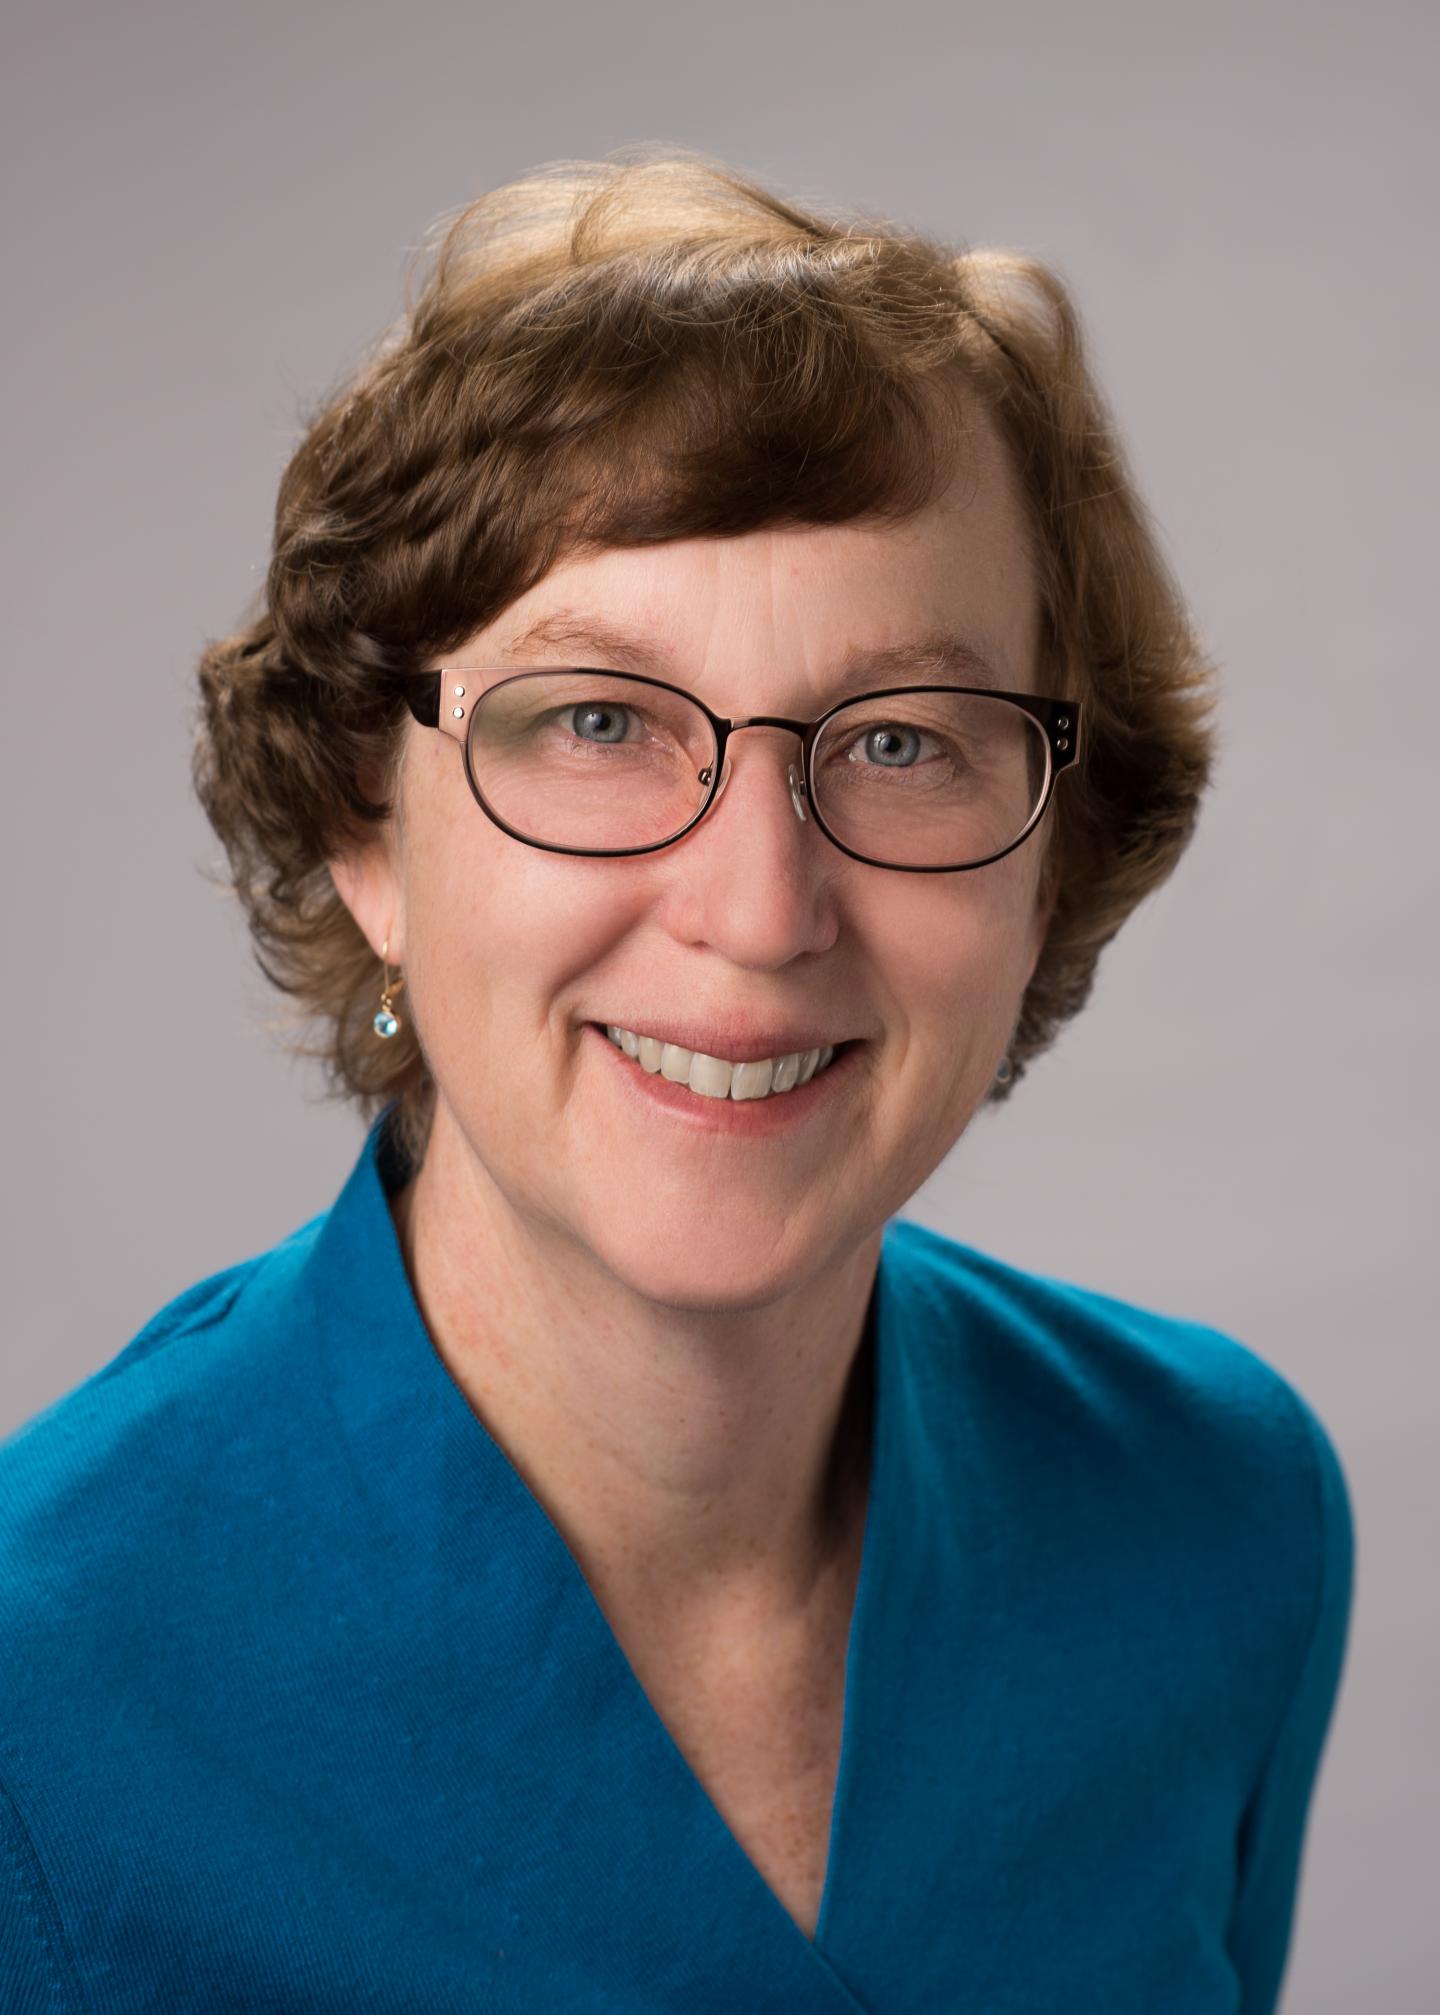 Katherine Yelick, DOE/Lawrence Berkeley National Laboratory